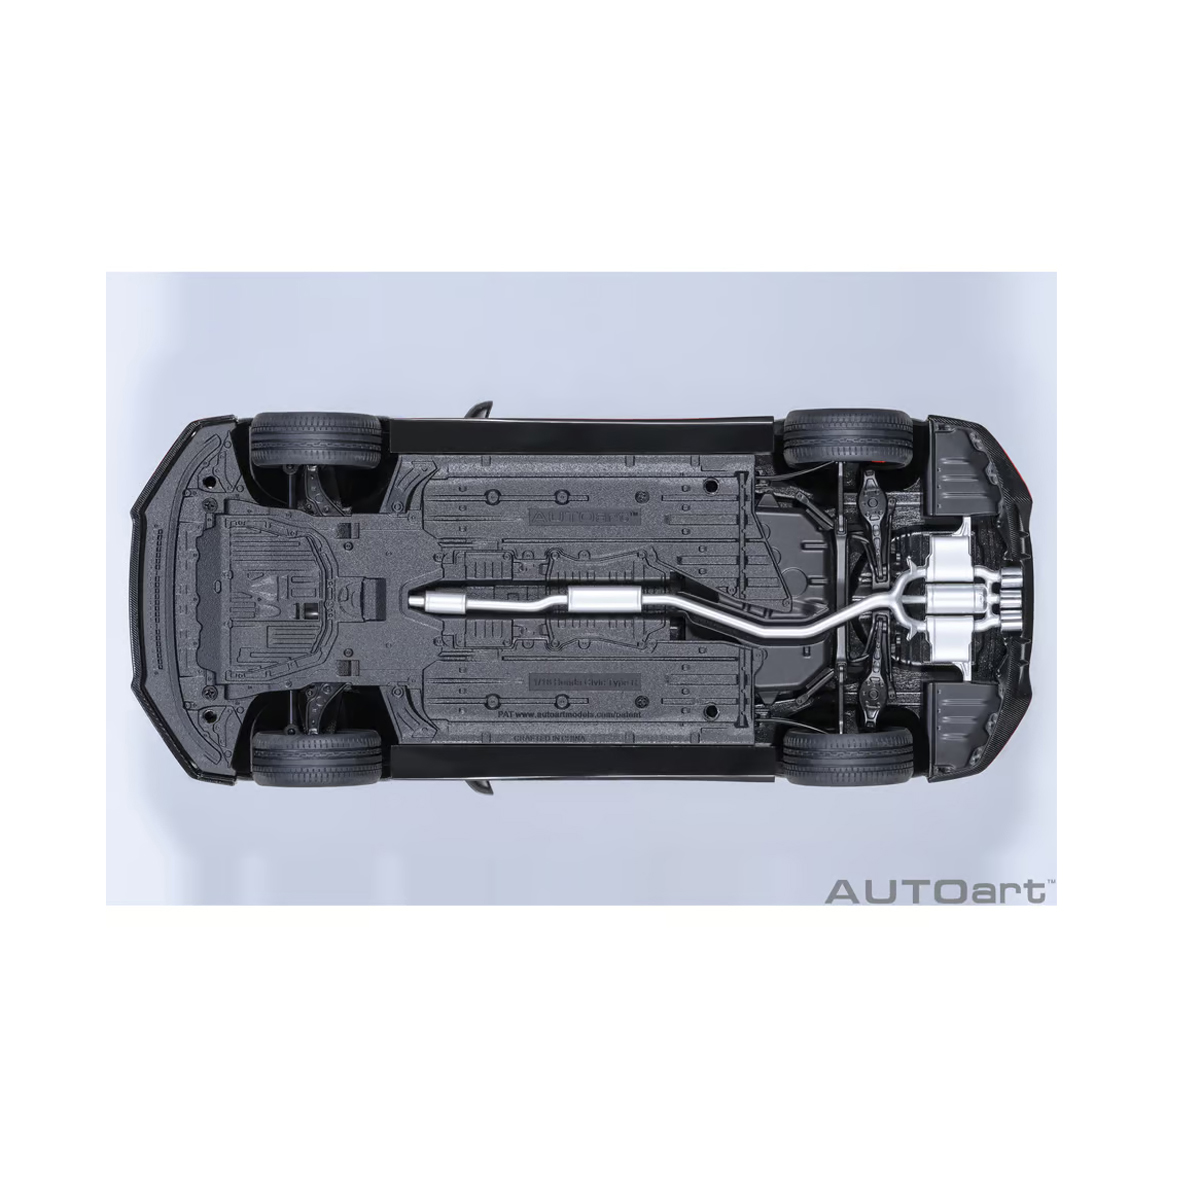 AUTOart 1/18 ホンダ シビック タイプR FK8 2021年式 / ポリッシュドメタル メタリック画像